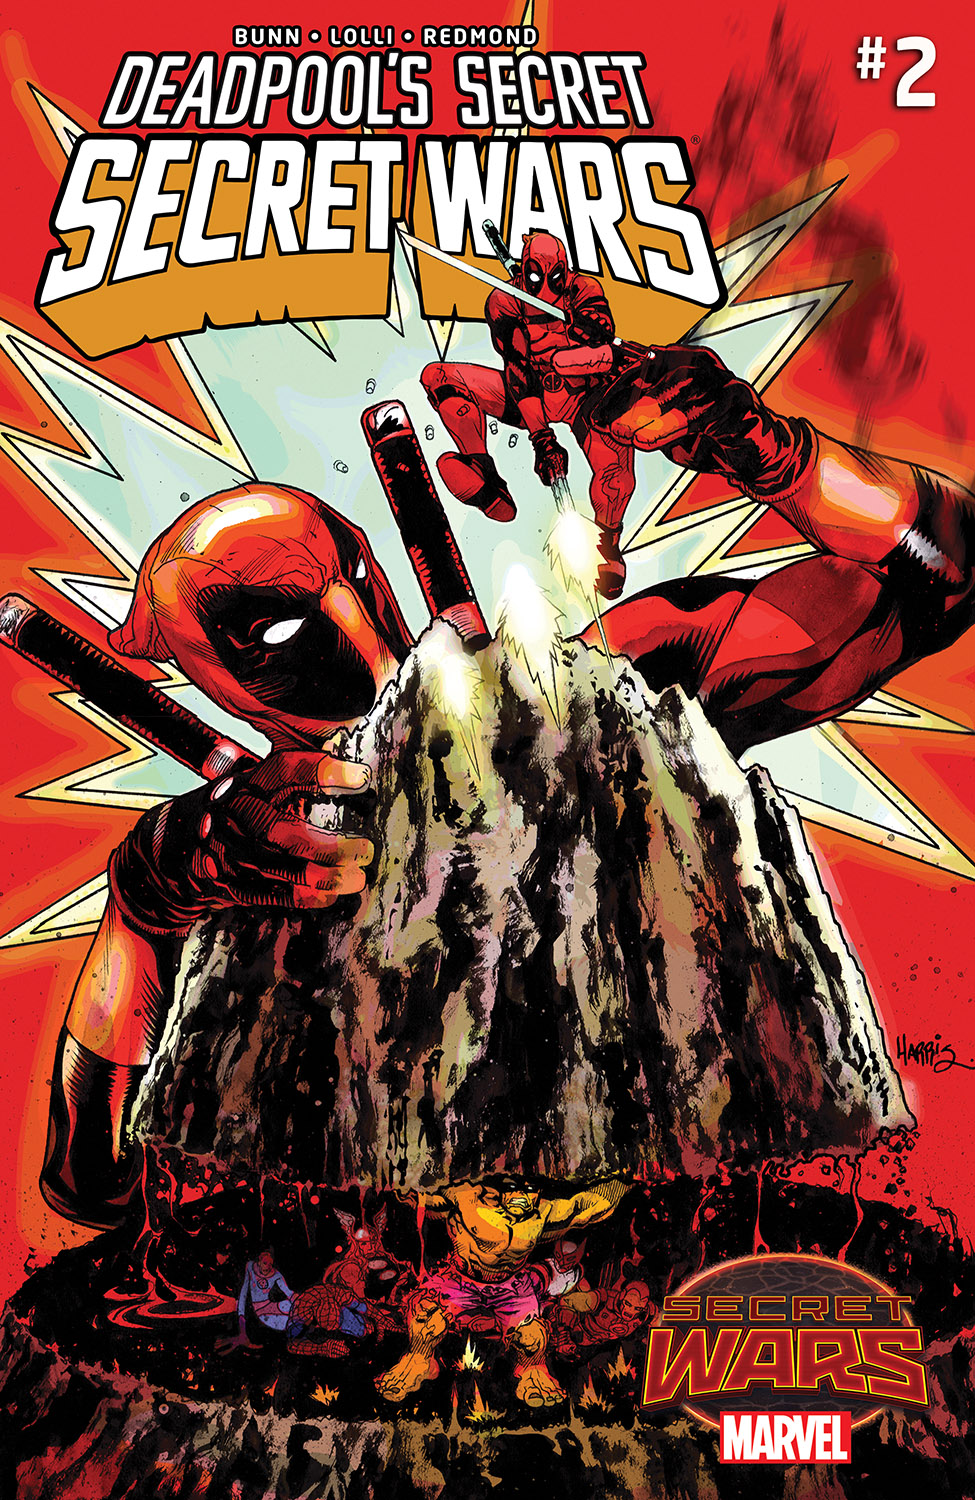 Deadpool's Secret Secret Wars (2015) #2